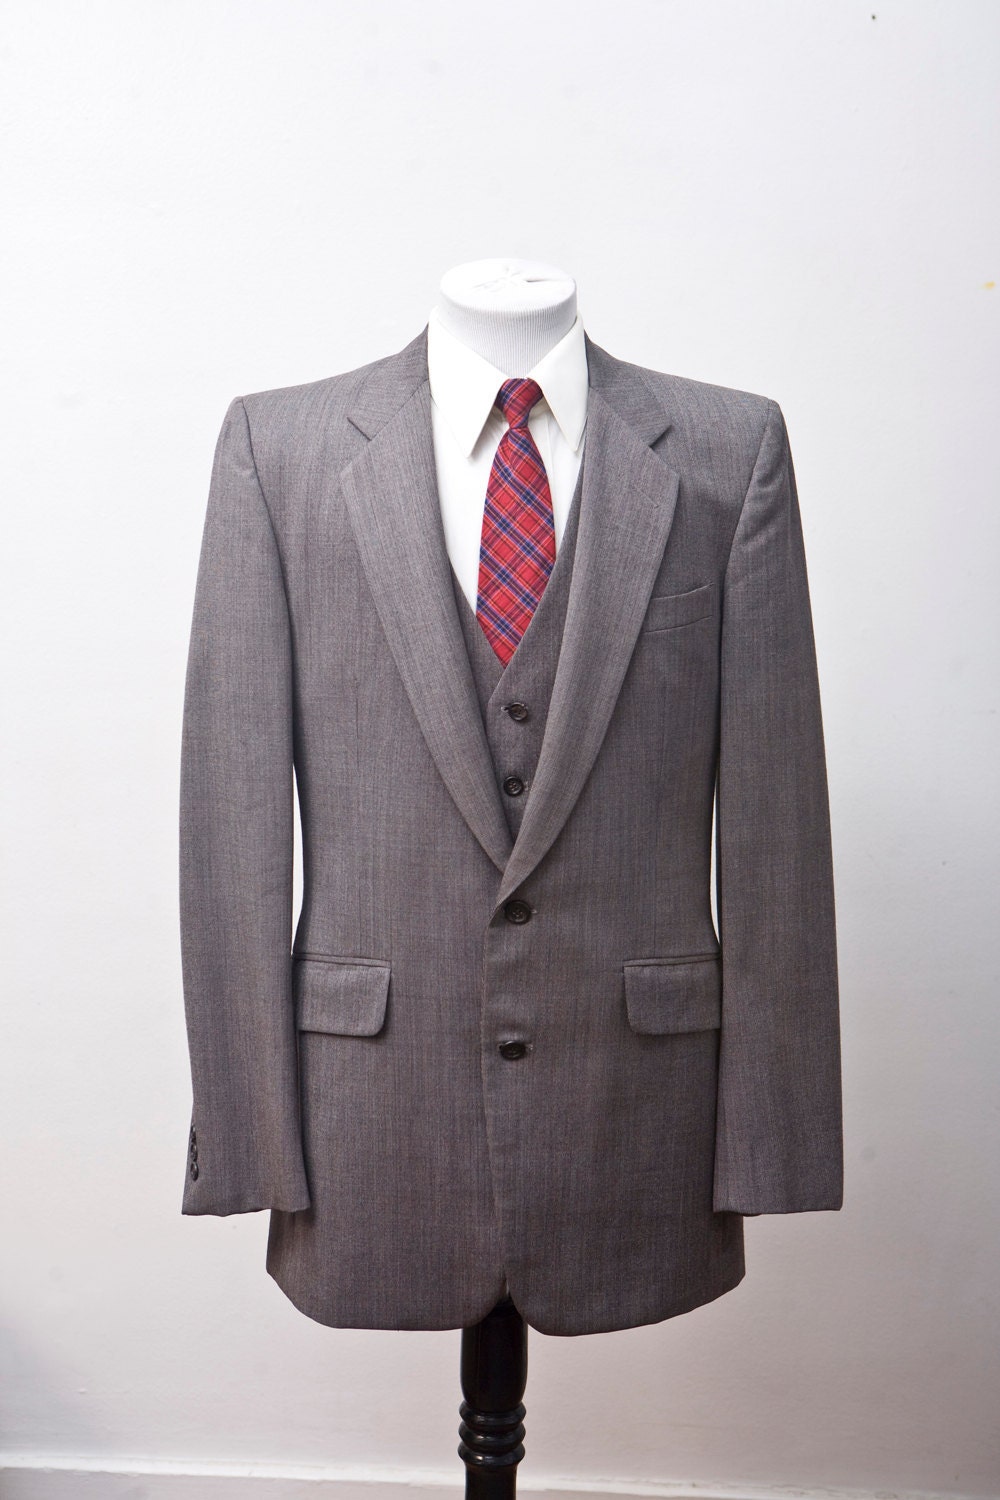 Men's Blazer and Vest / Sport Coat and Waistcoat / Brown